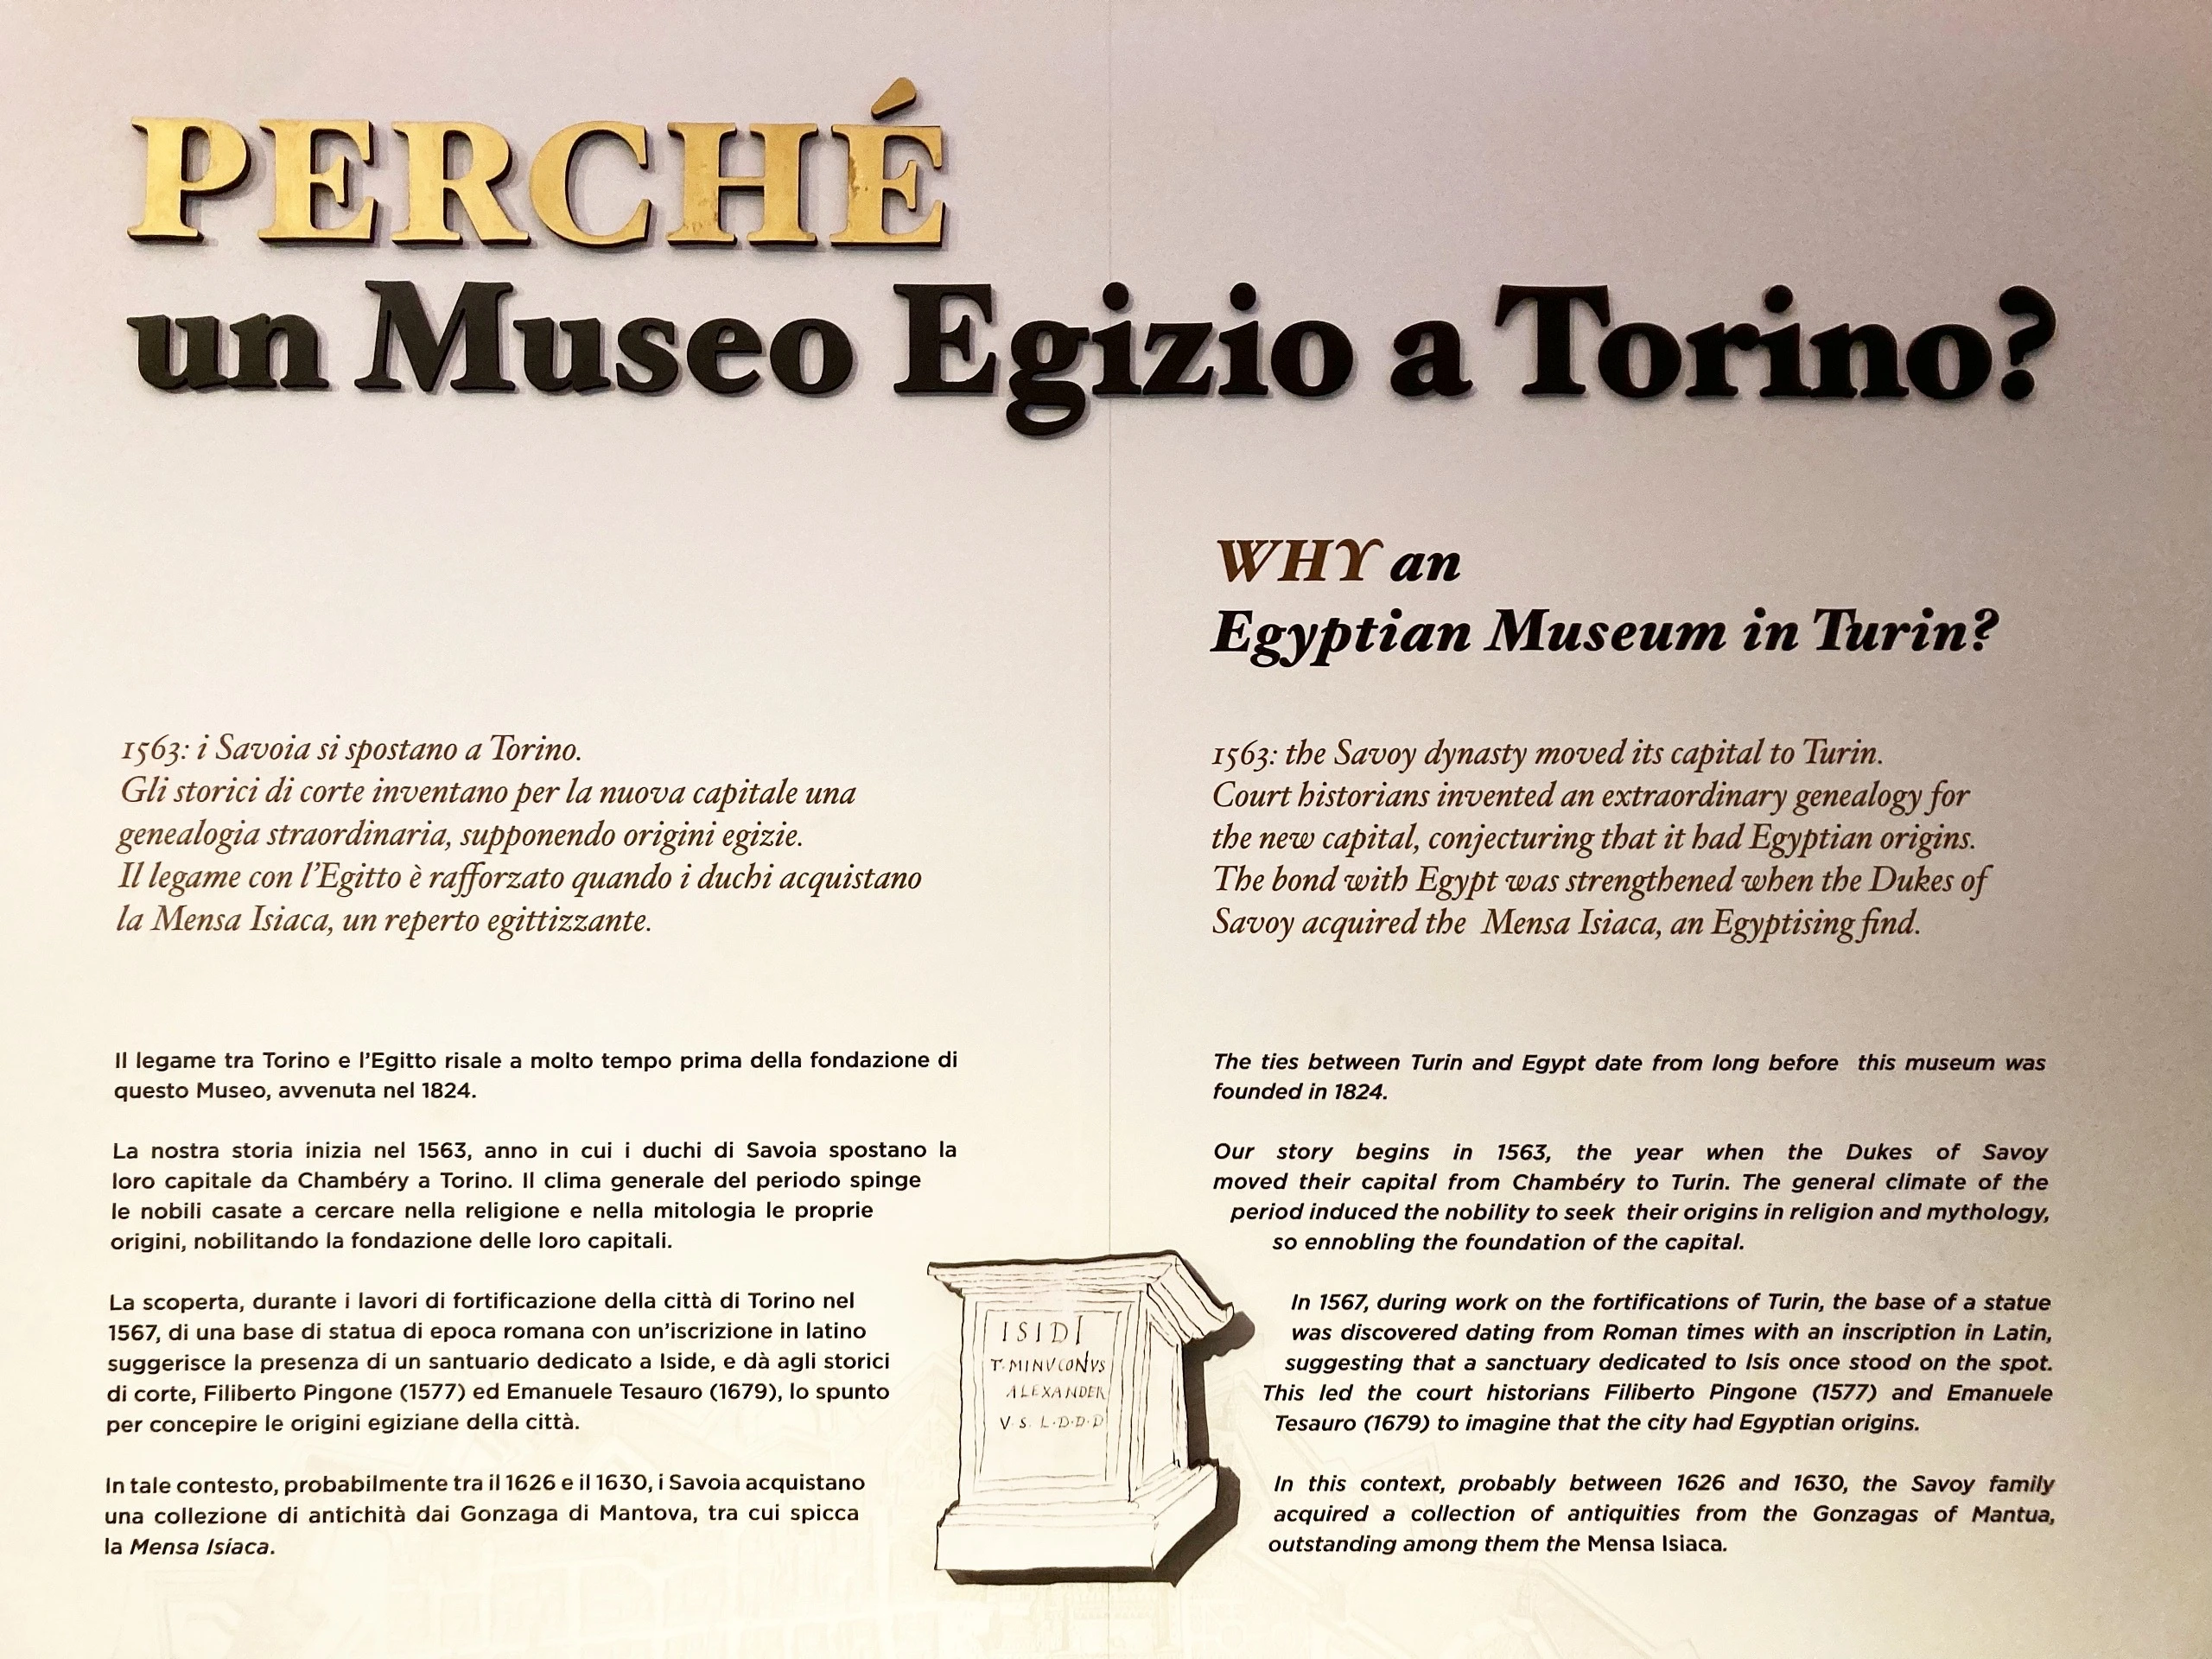 トリノのエジプト博物館内、「PERCHÉ un Museo Egizio a Torino?（なぜトリノにエジプト博物館？）」と書かれた展示。